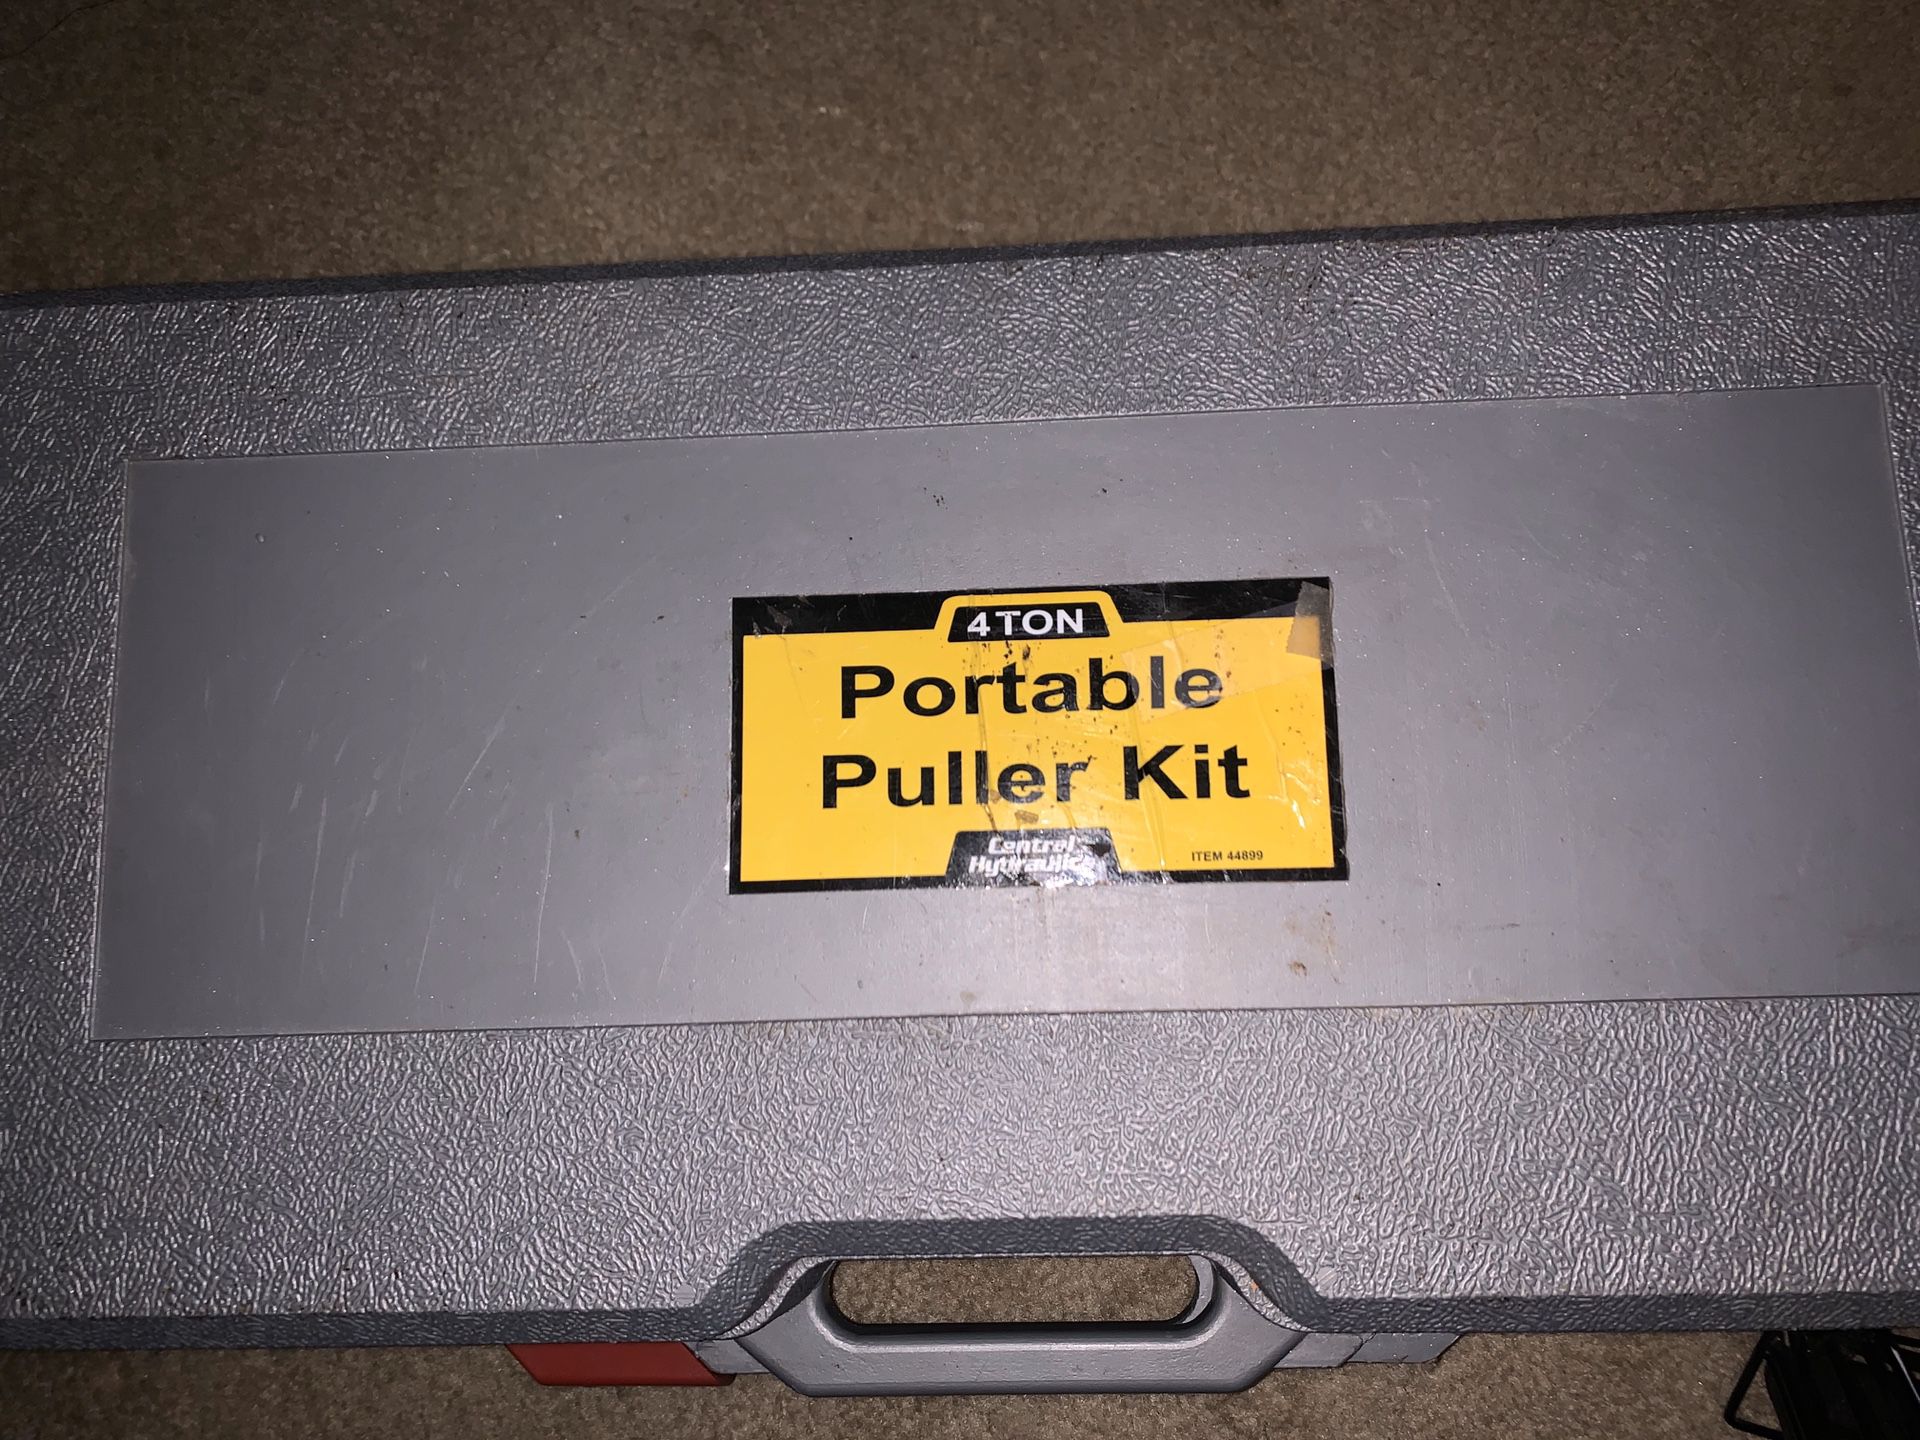 Portable Puller Kit